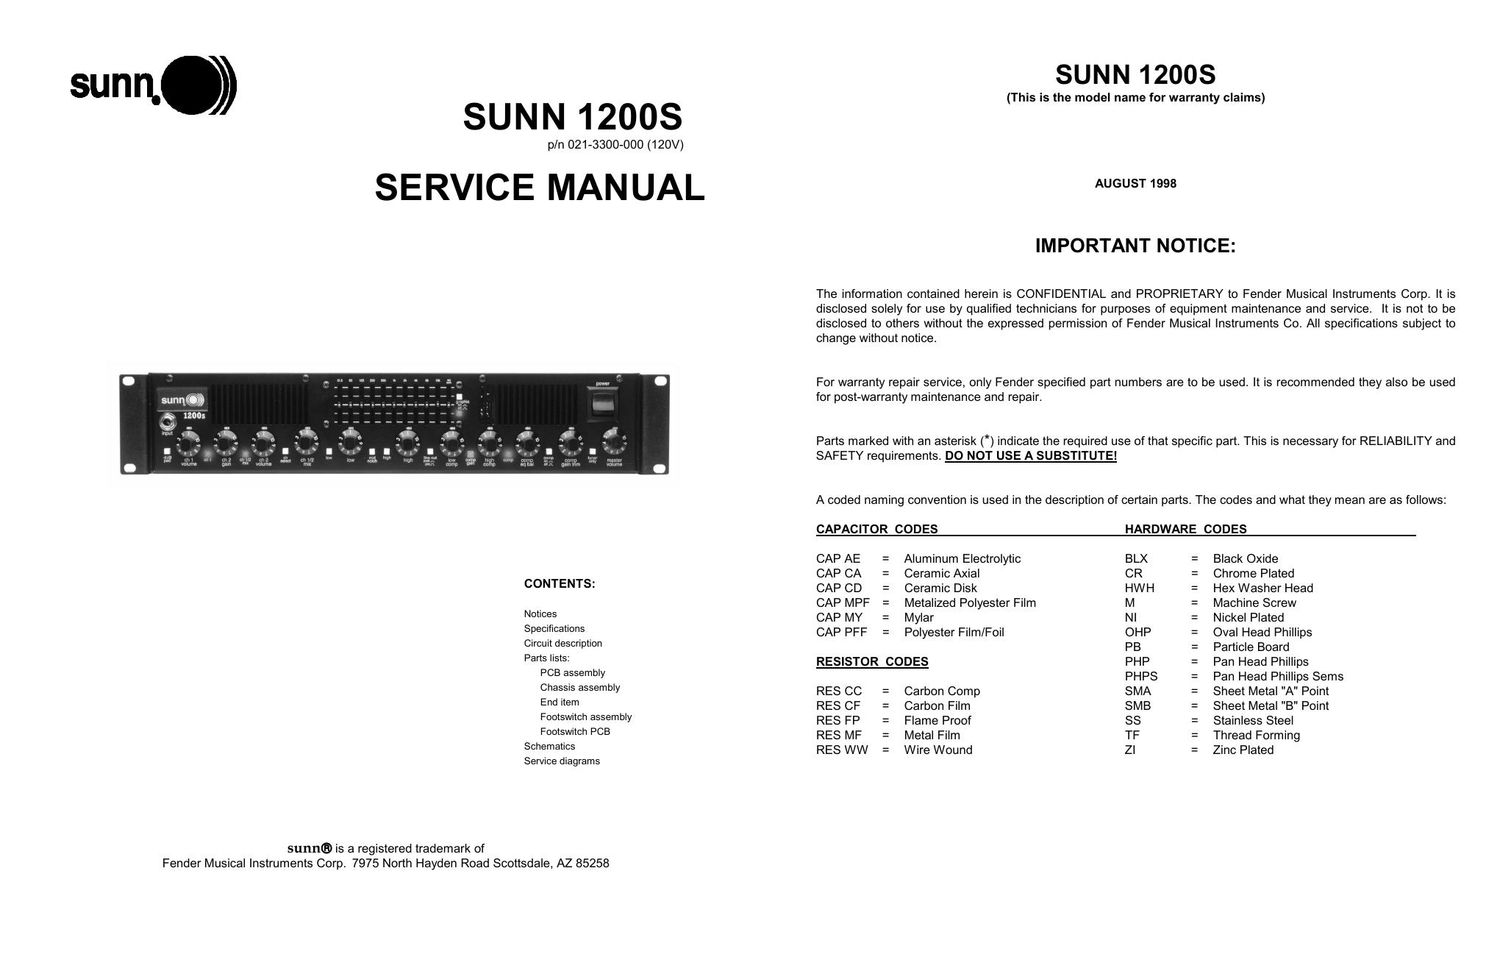 sunn 1200s service manual